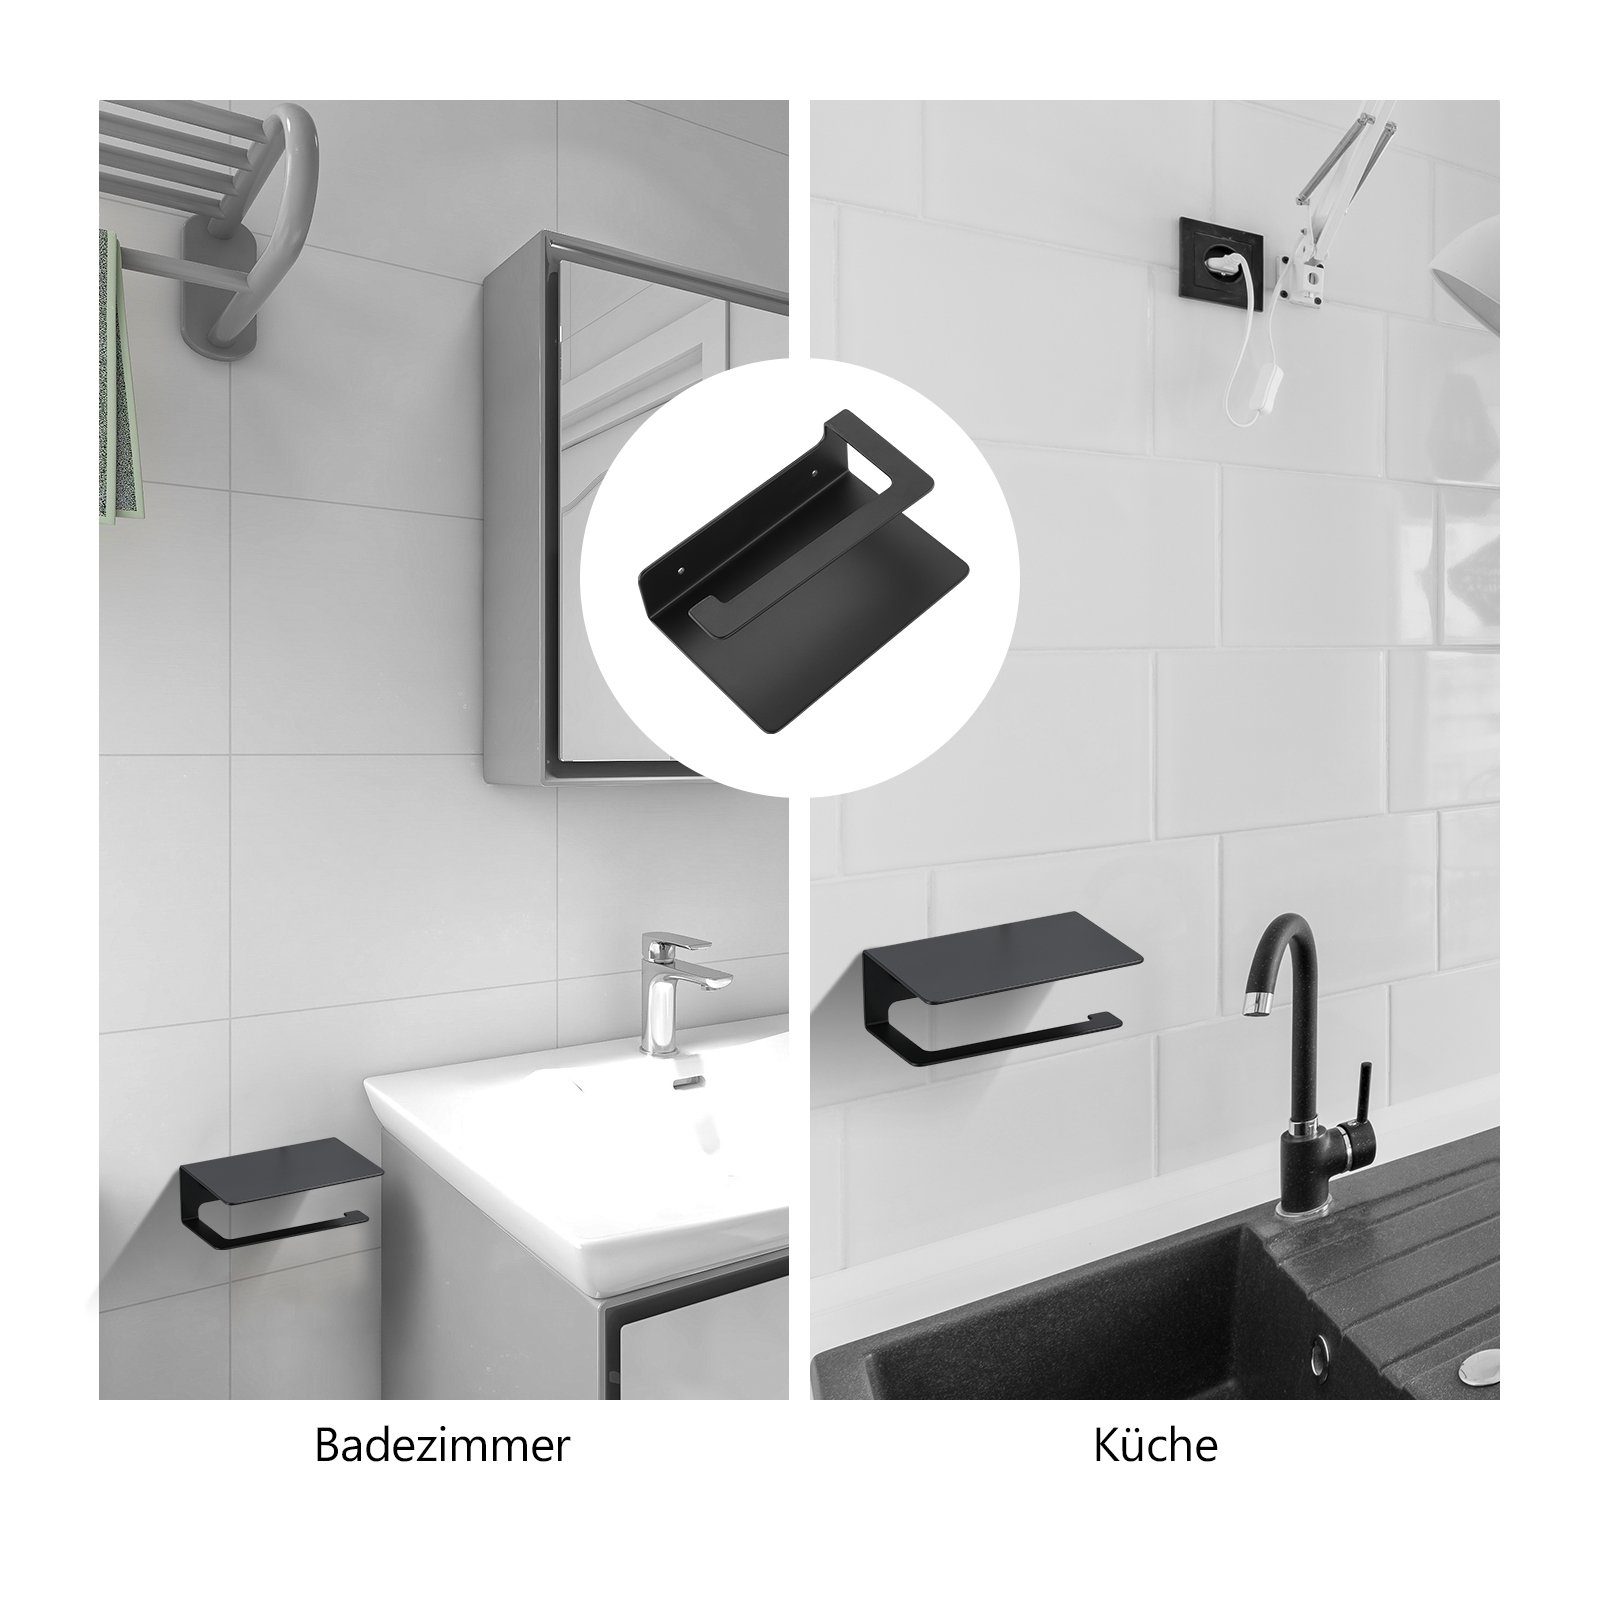 Küche EMKE und Schwarz freistehender Klorollenhalter, fürs Toilettenpapierhalter Badezimmer, für EMKE Badzimmer, Toilettenpapierhalter, Papierrollenhalter